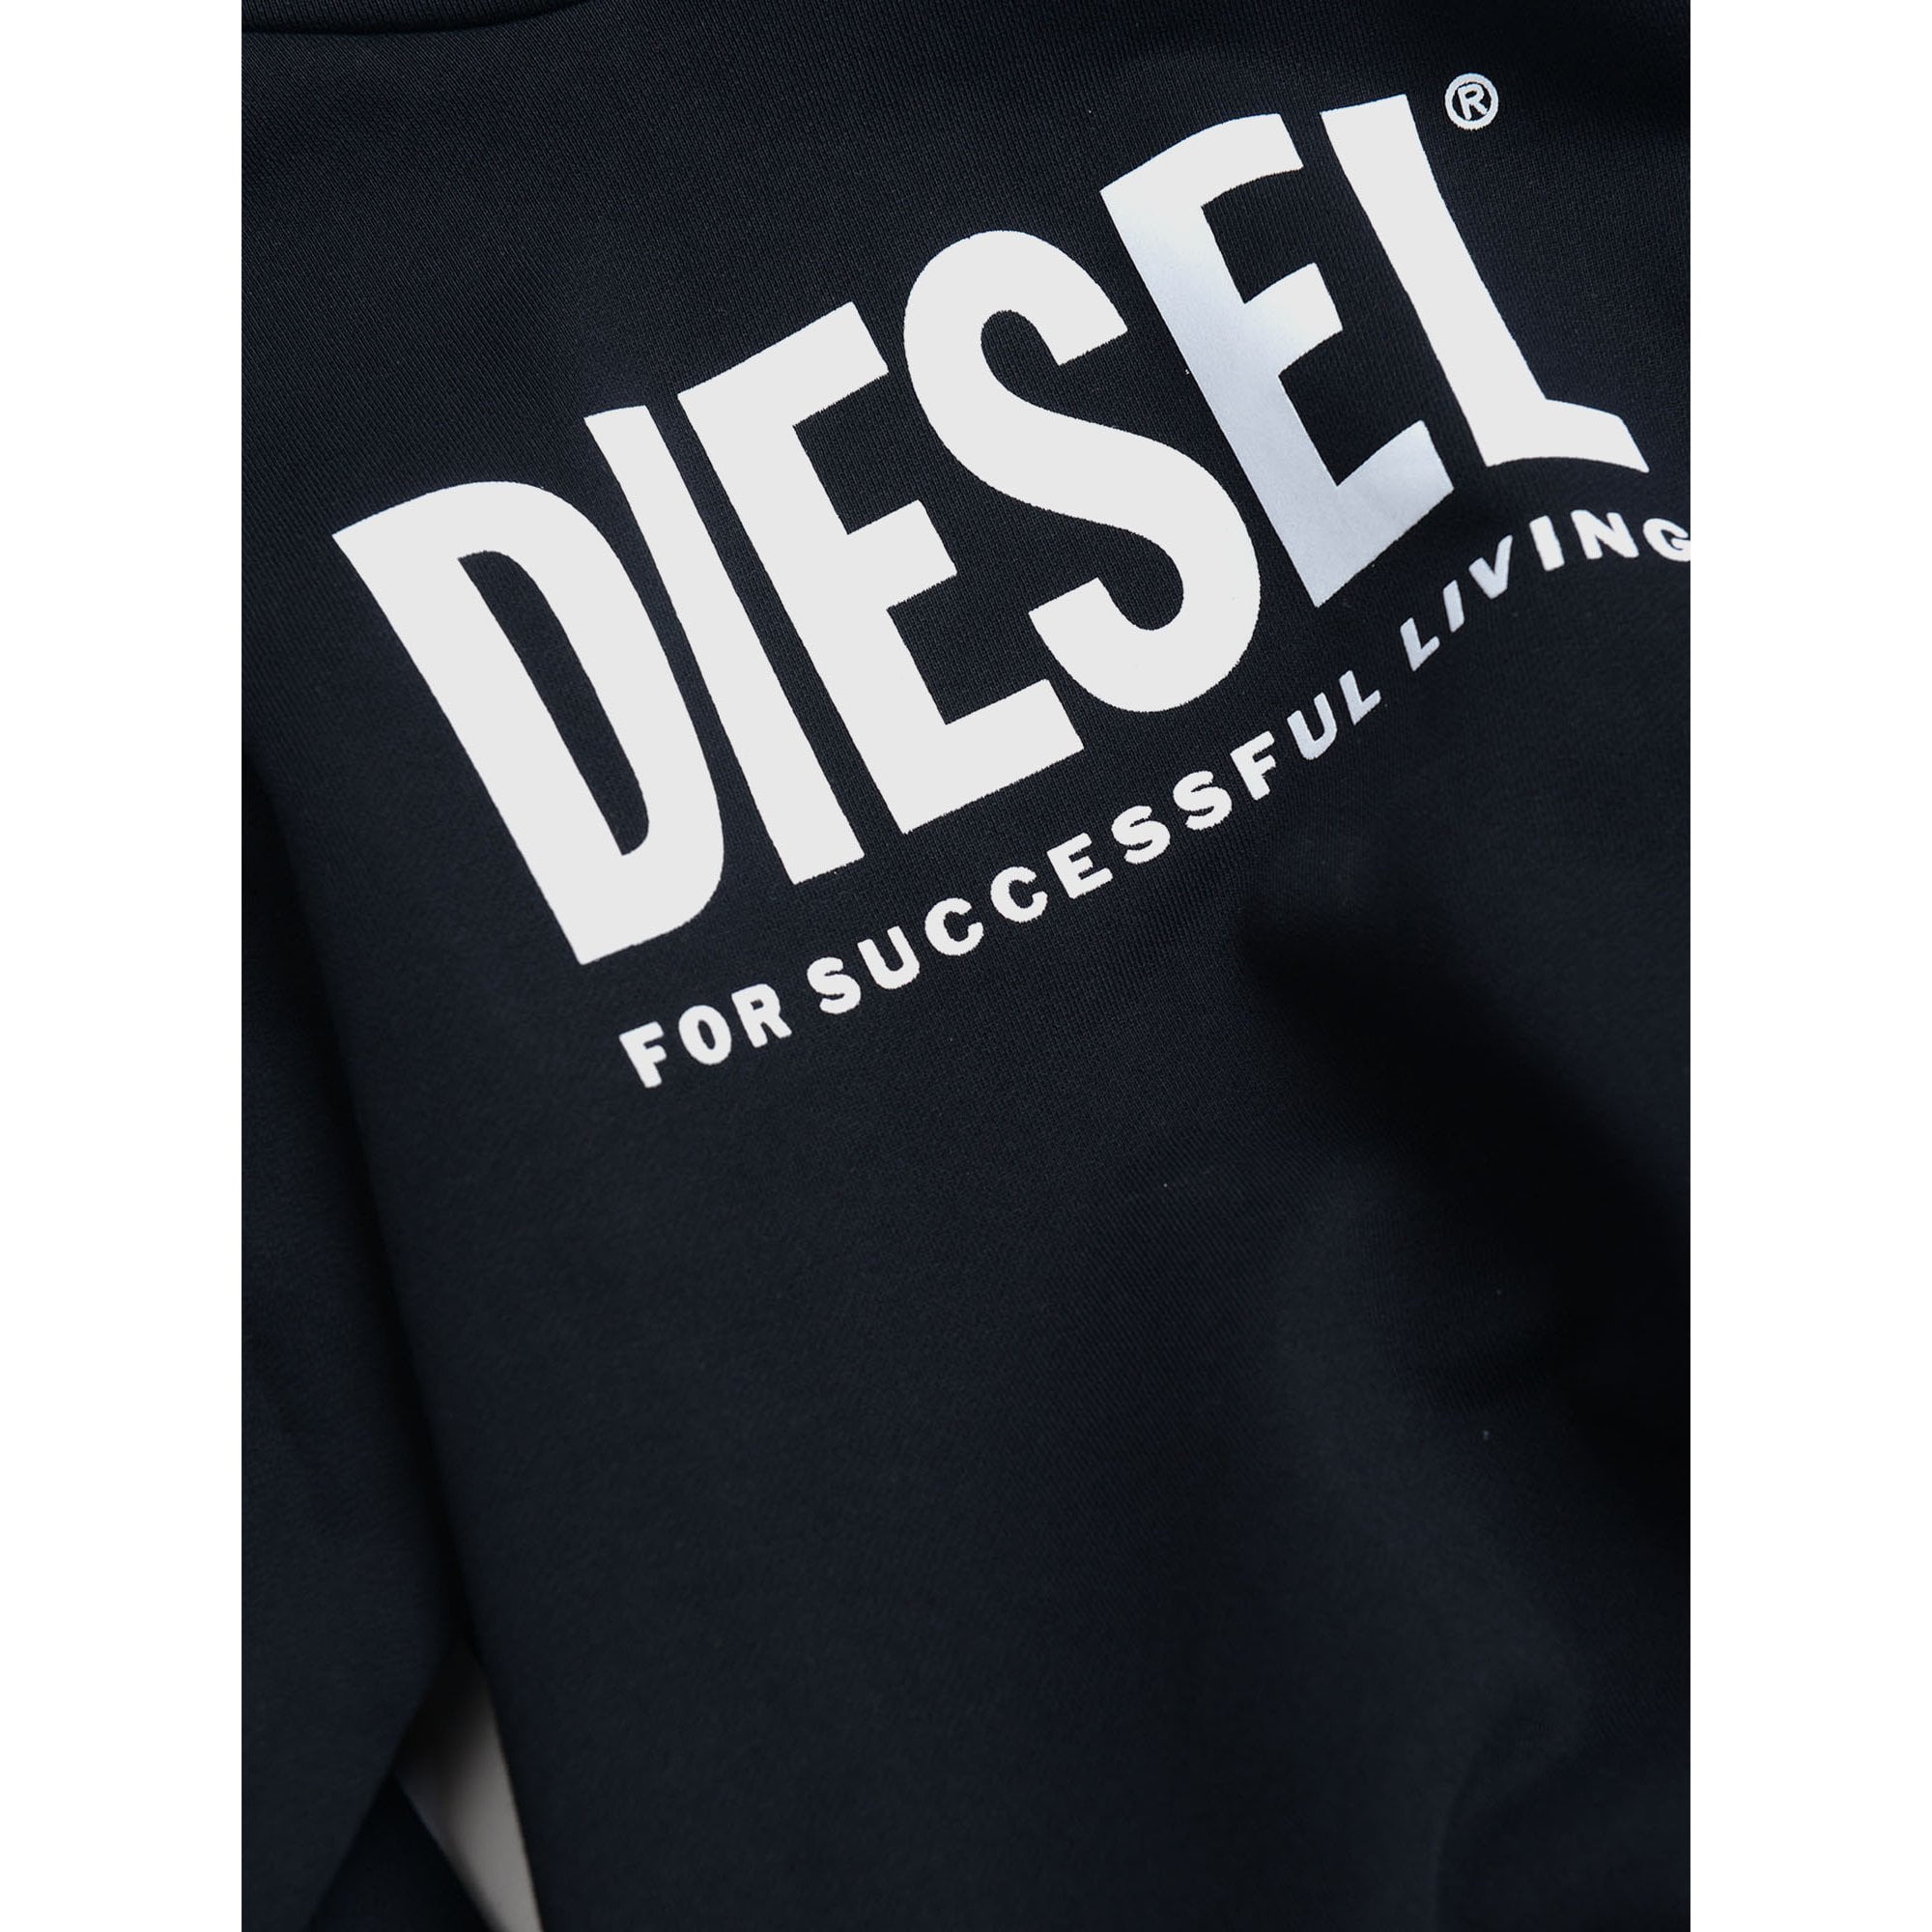 Diesel Boys Sdivision Logo Hoodie Black